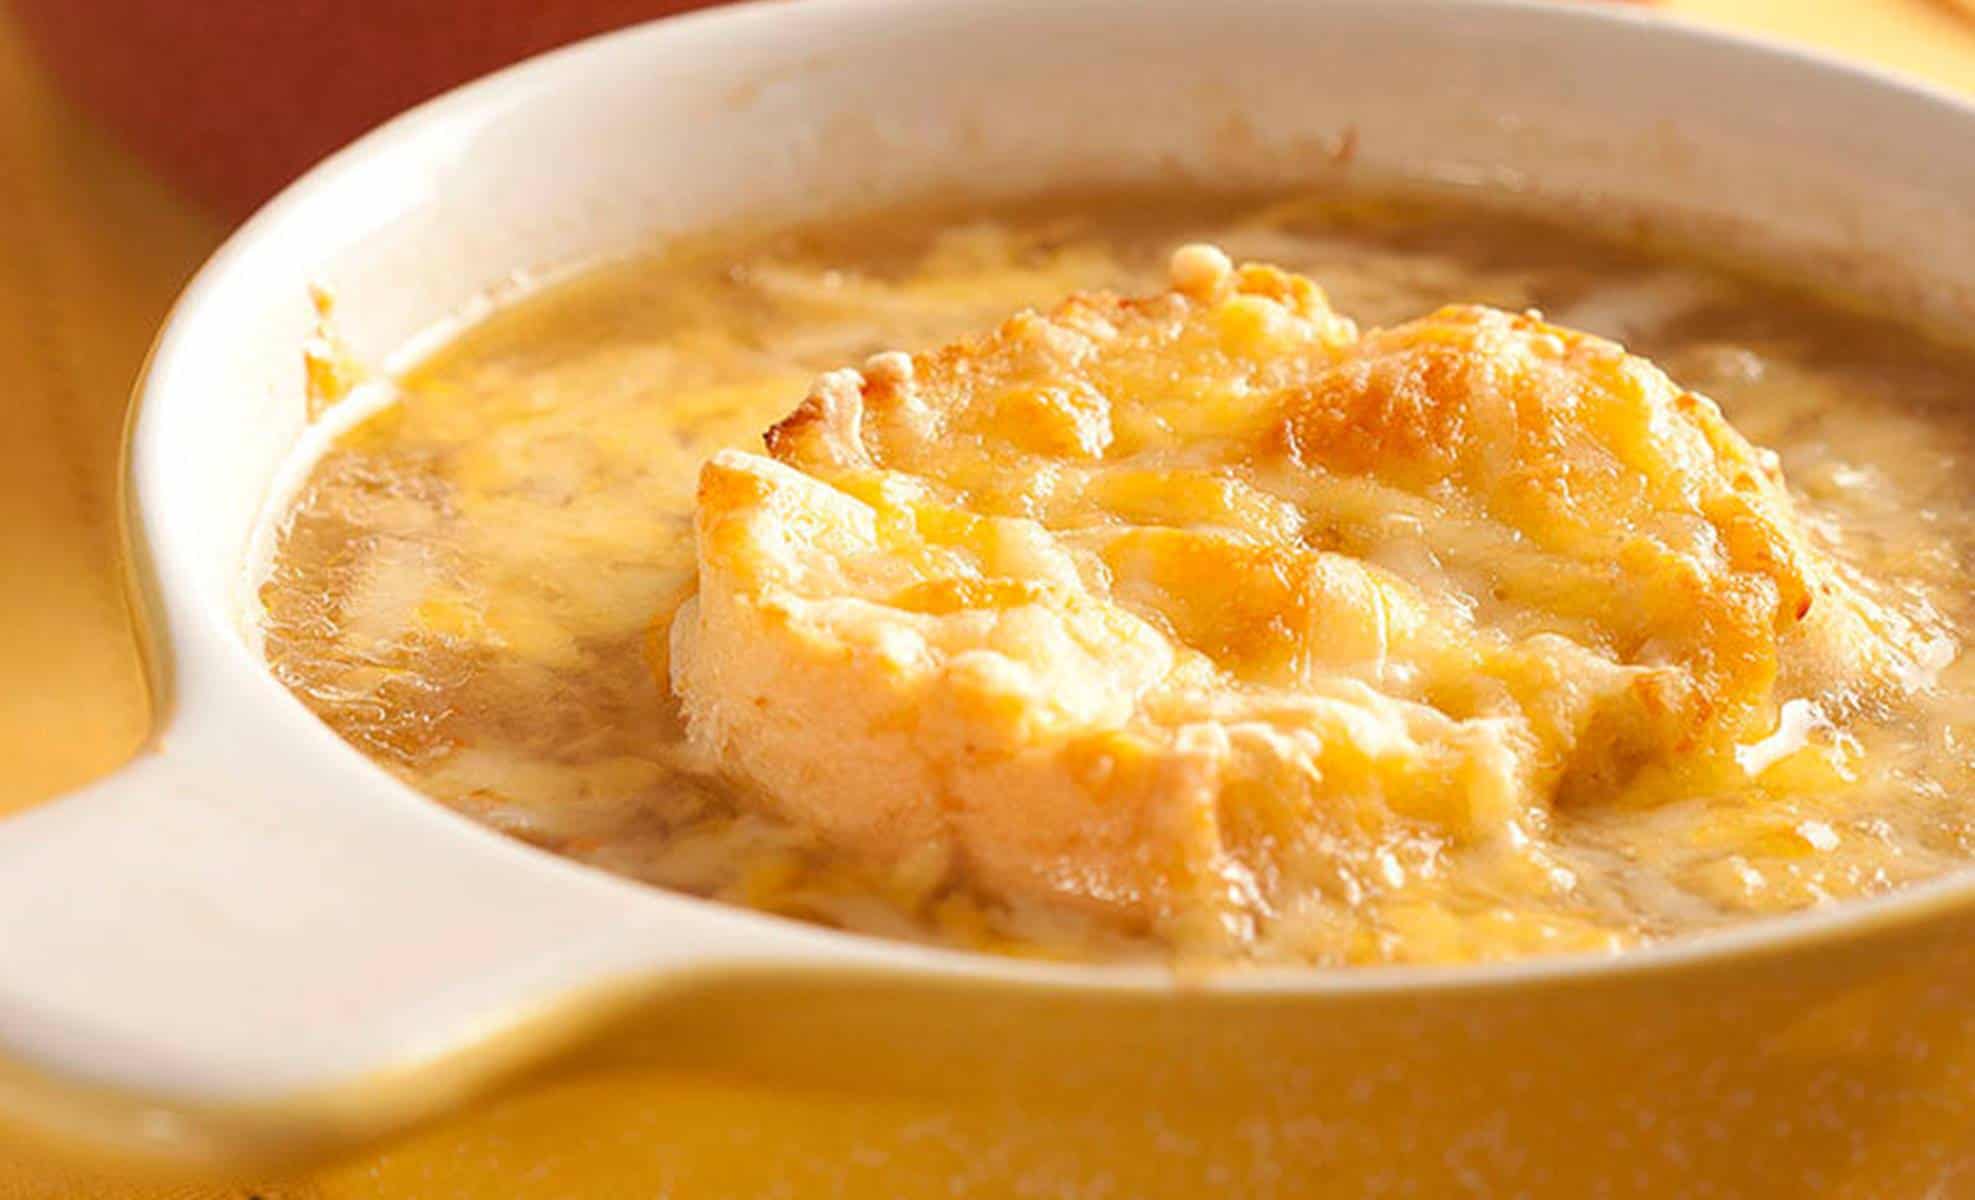 Sopa de cebola: prepare este delicioso prato fácil em minutos